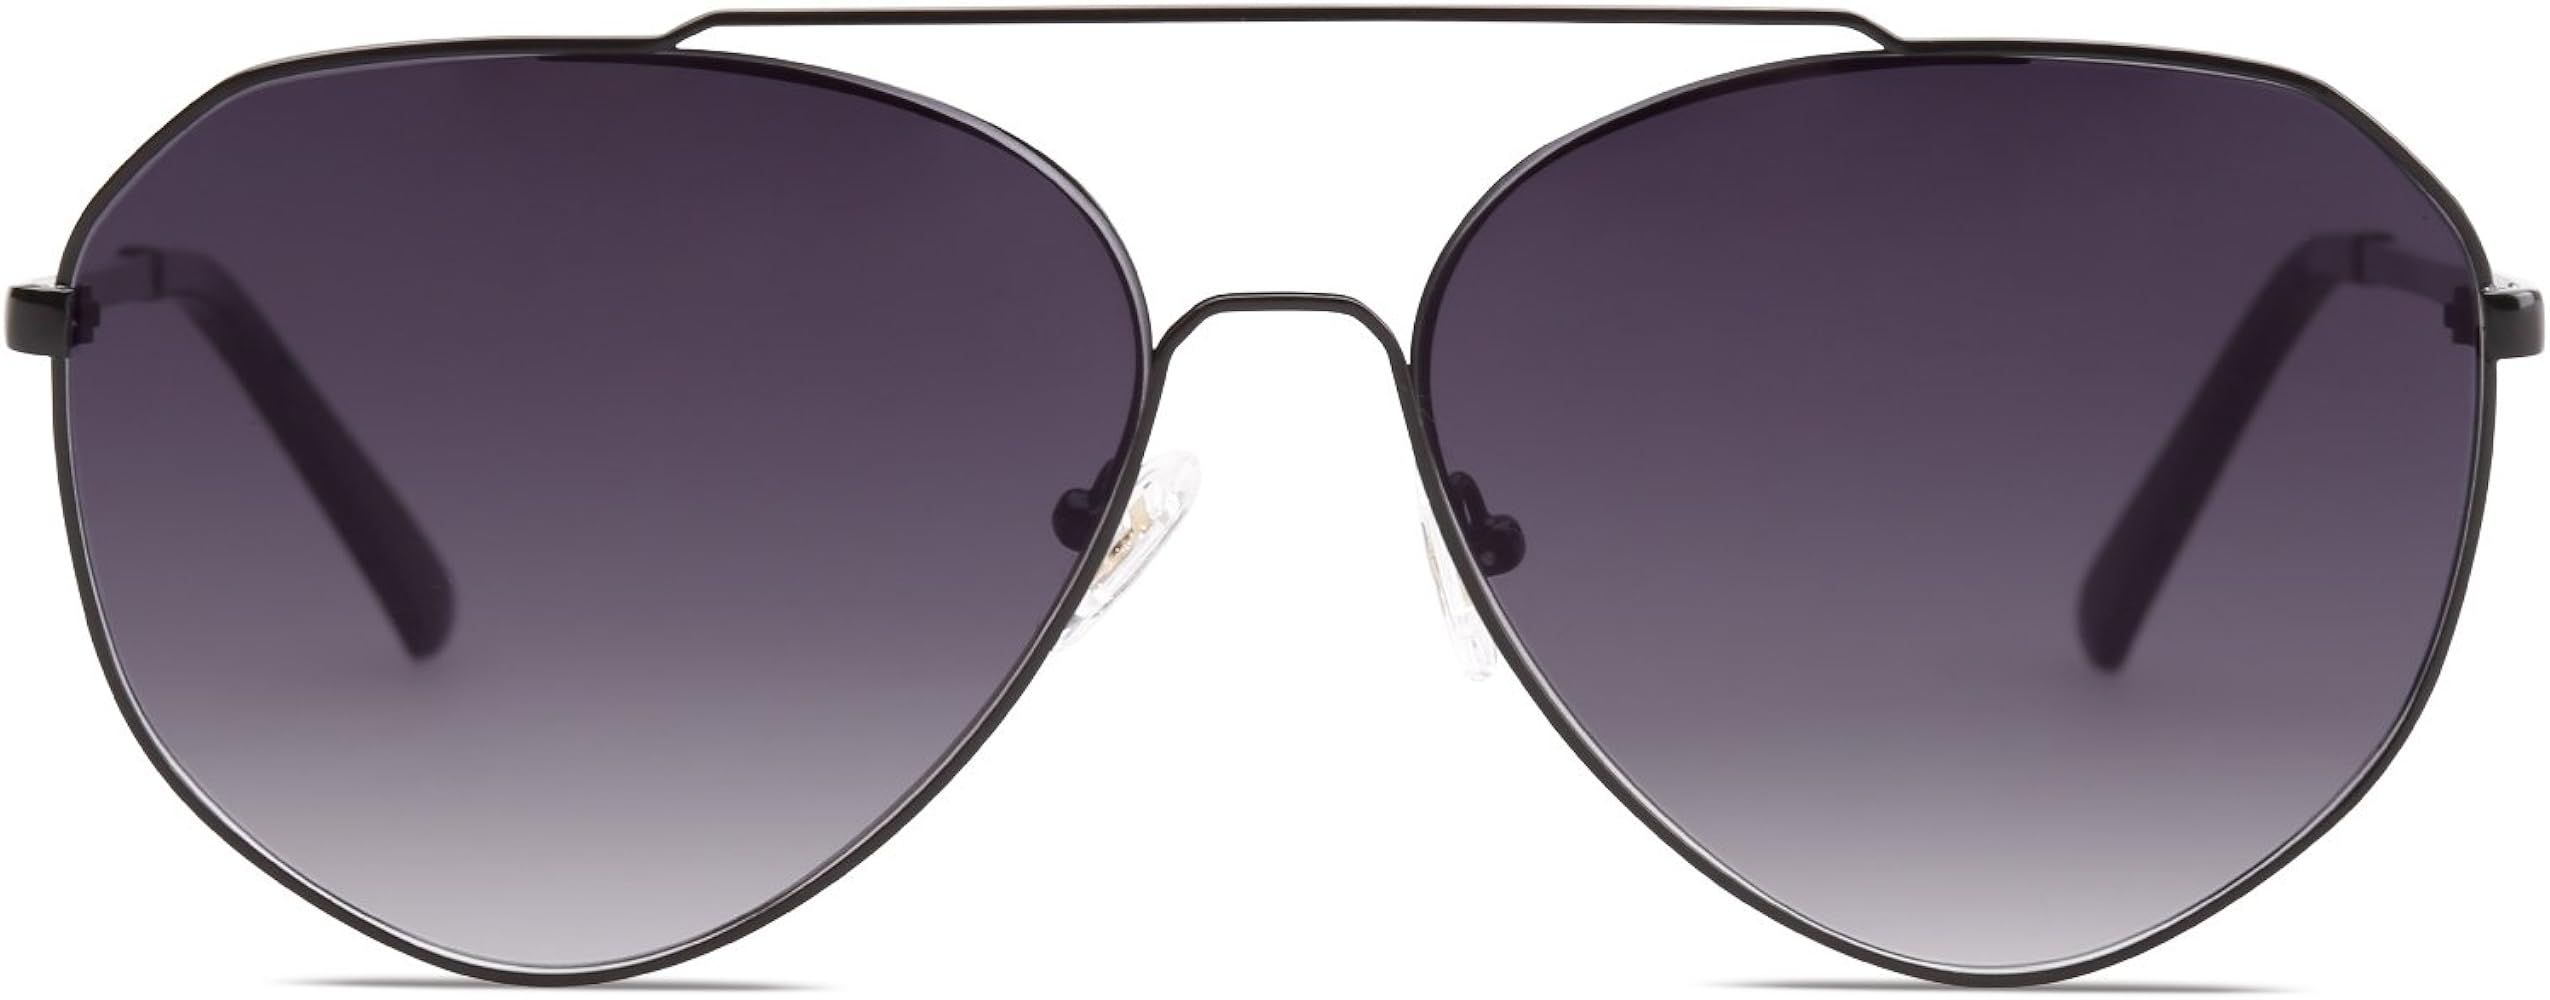 Oversized Aviator Sunglasses Mirrored Flat Lens for Men Women UV400 SJ1083 | Amazon (US)